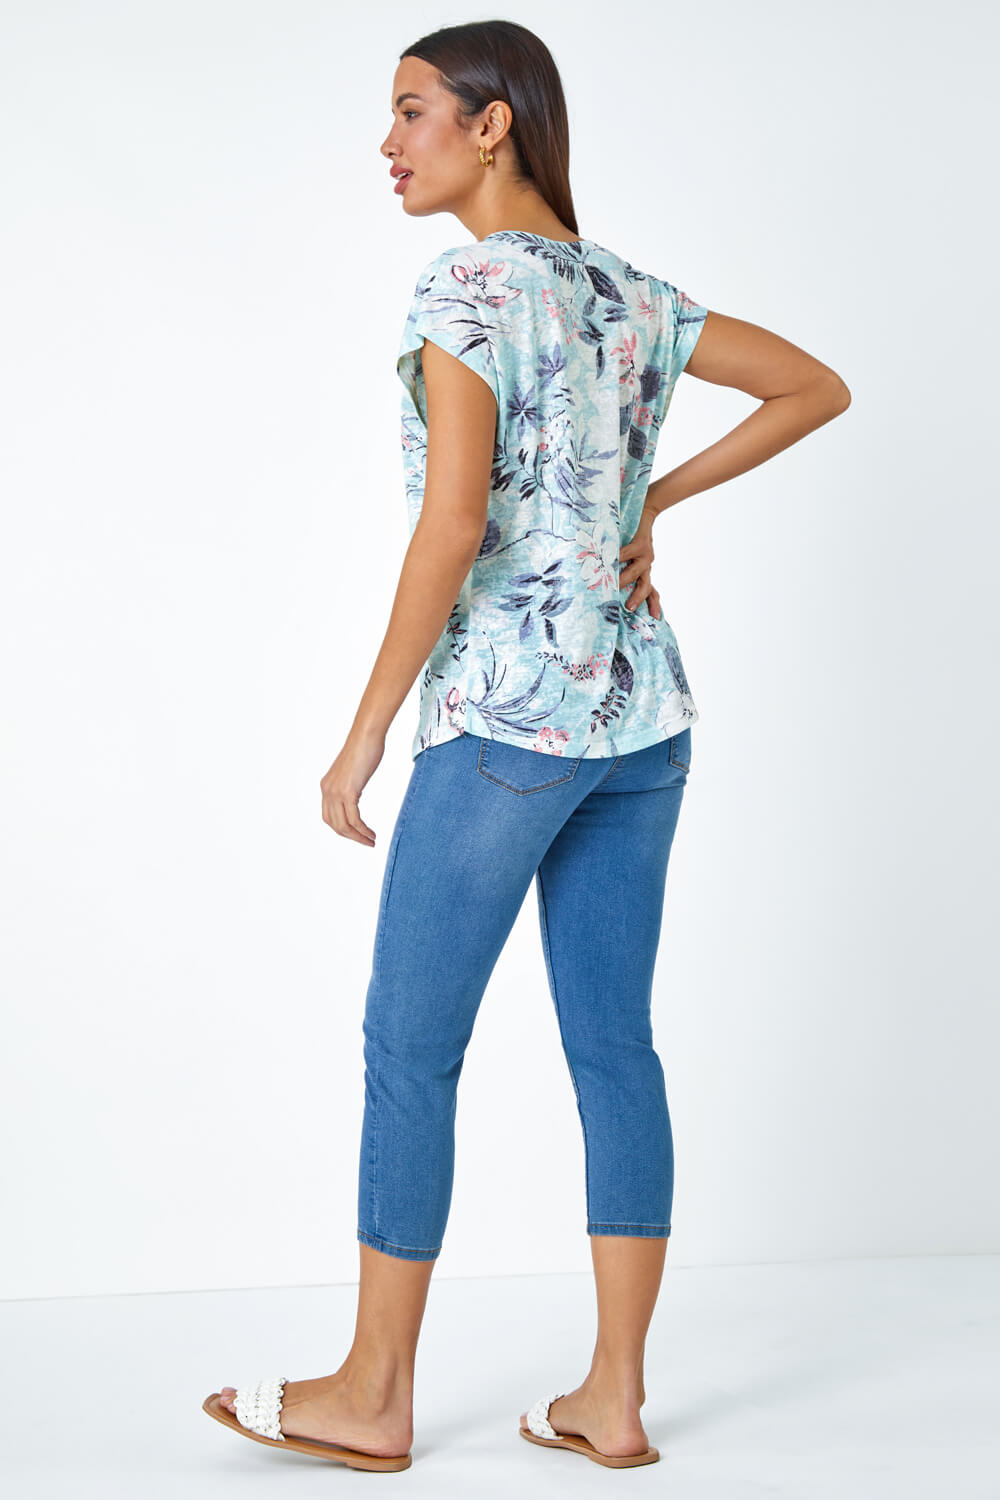 Blue Floral Hotfix Embellished Stretch T-Shirt, Image 3 of 5